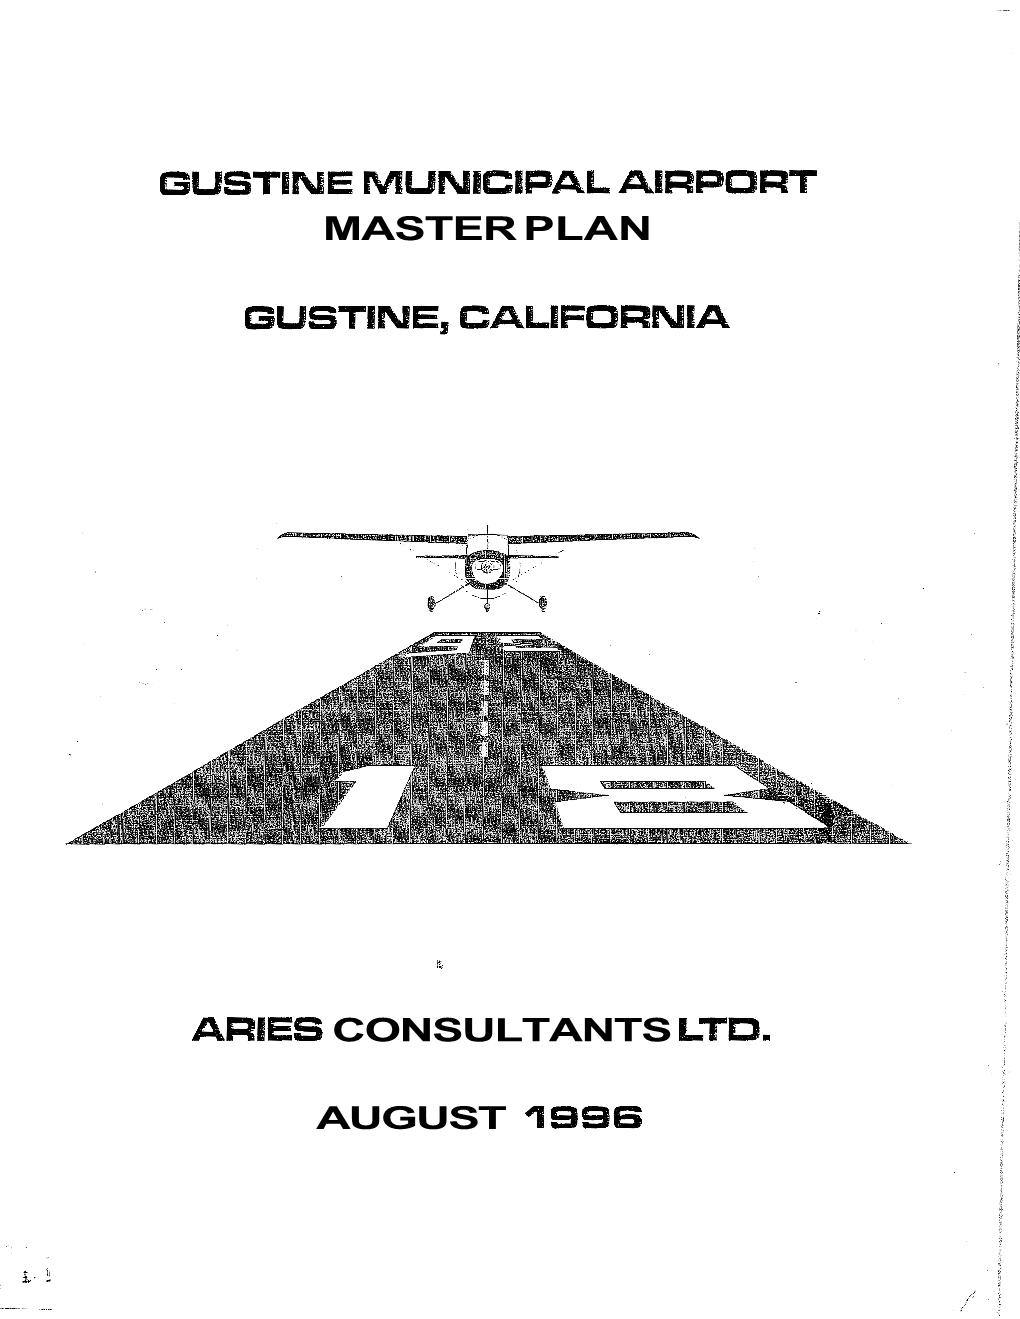 Gustine Municipal Airport Master Plan